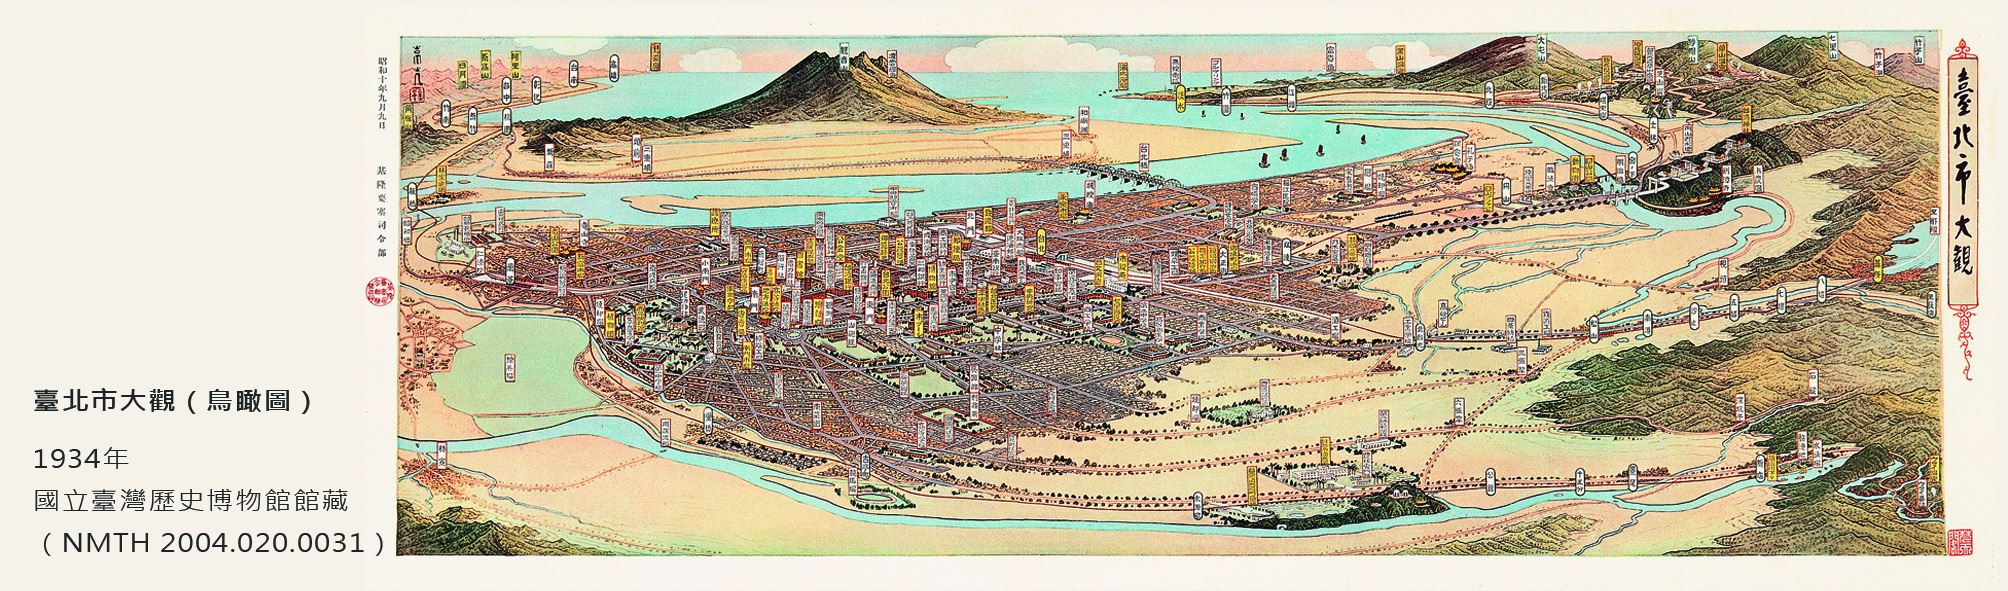 地圖書籤6(1935年-台北)